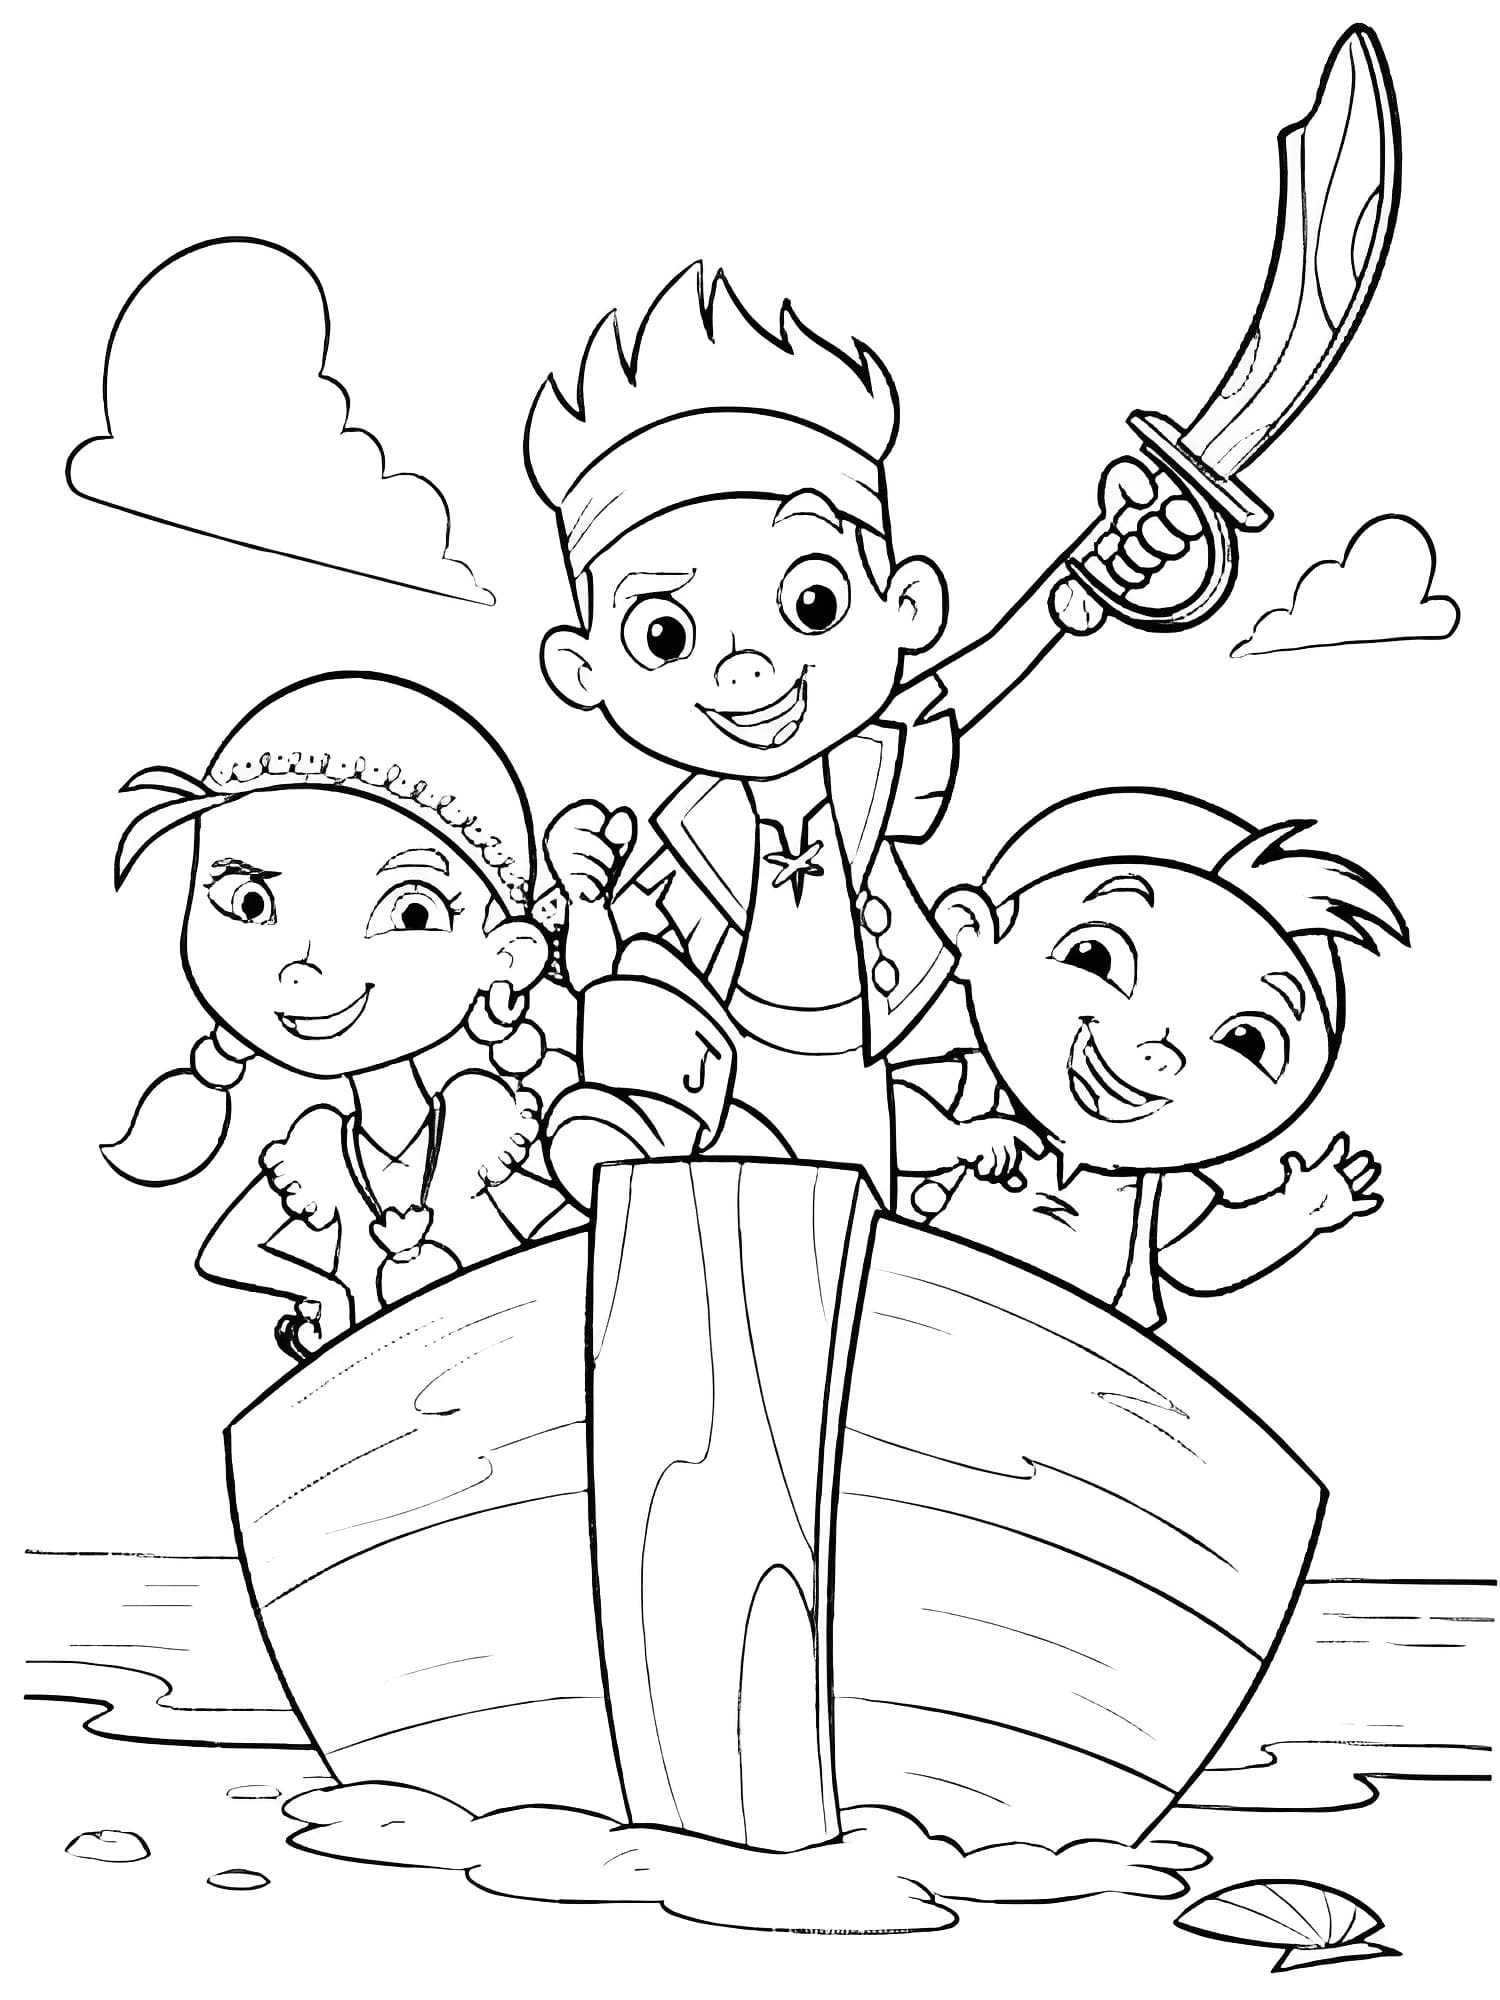 Målarbild Karaktärer från Jake och Piraterna